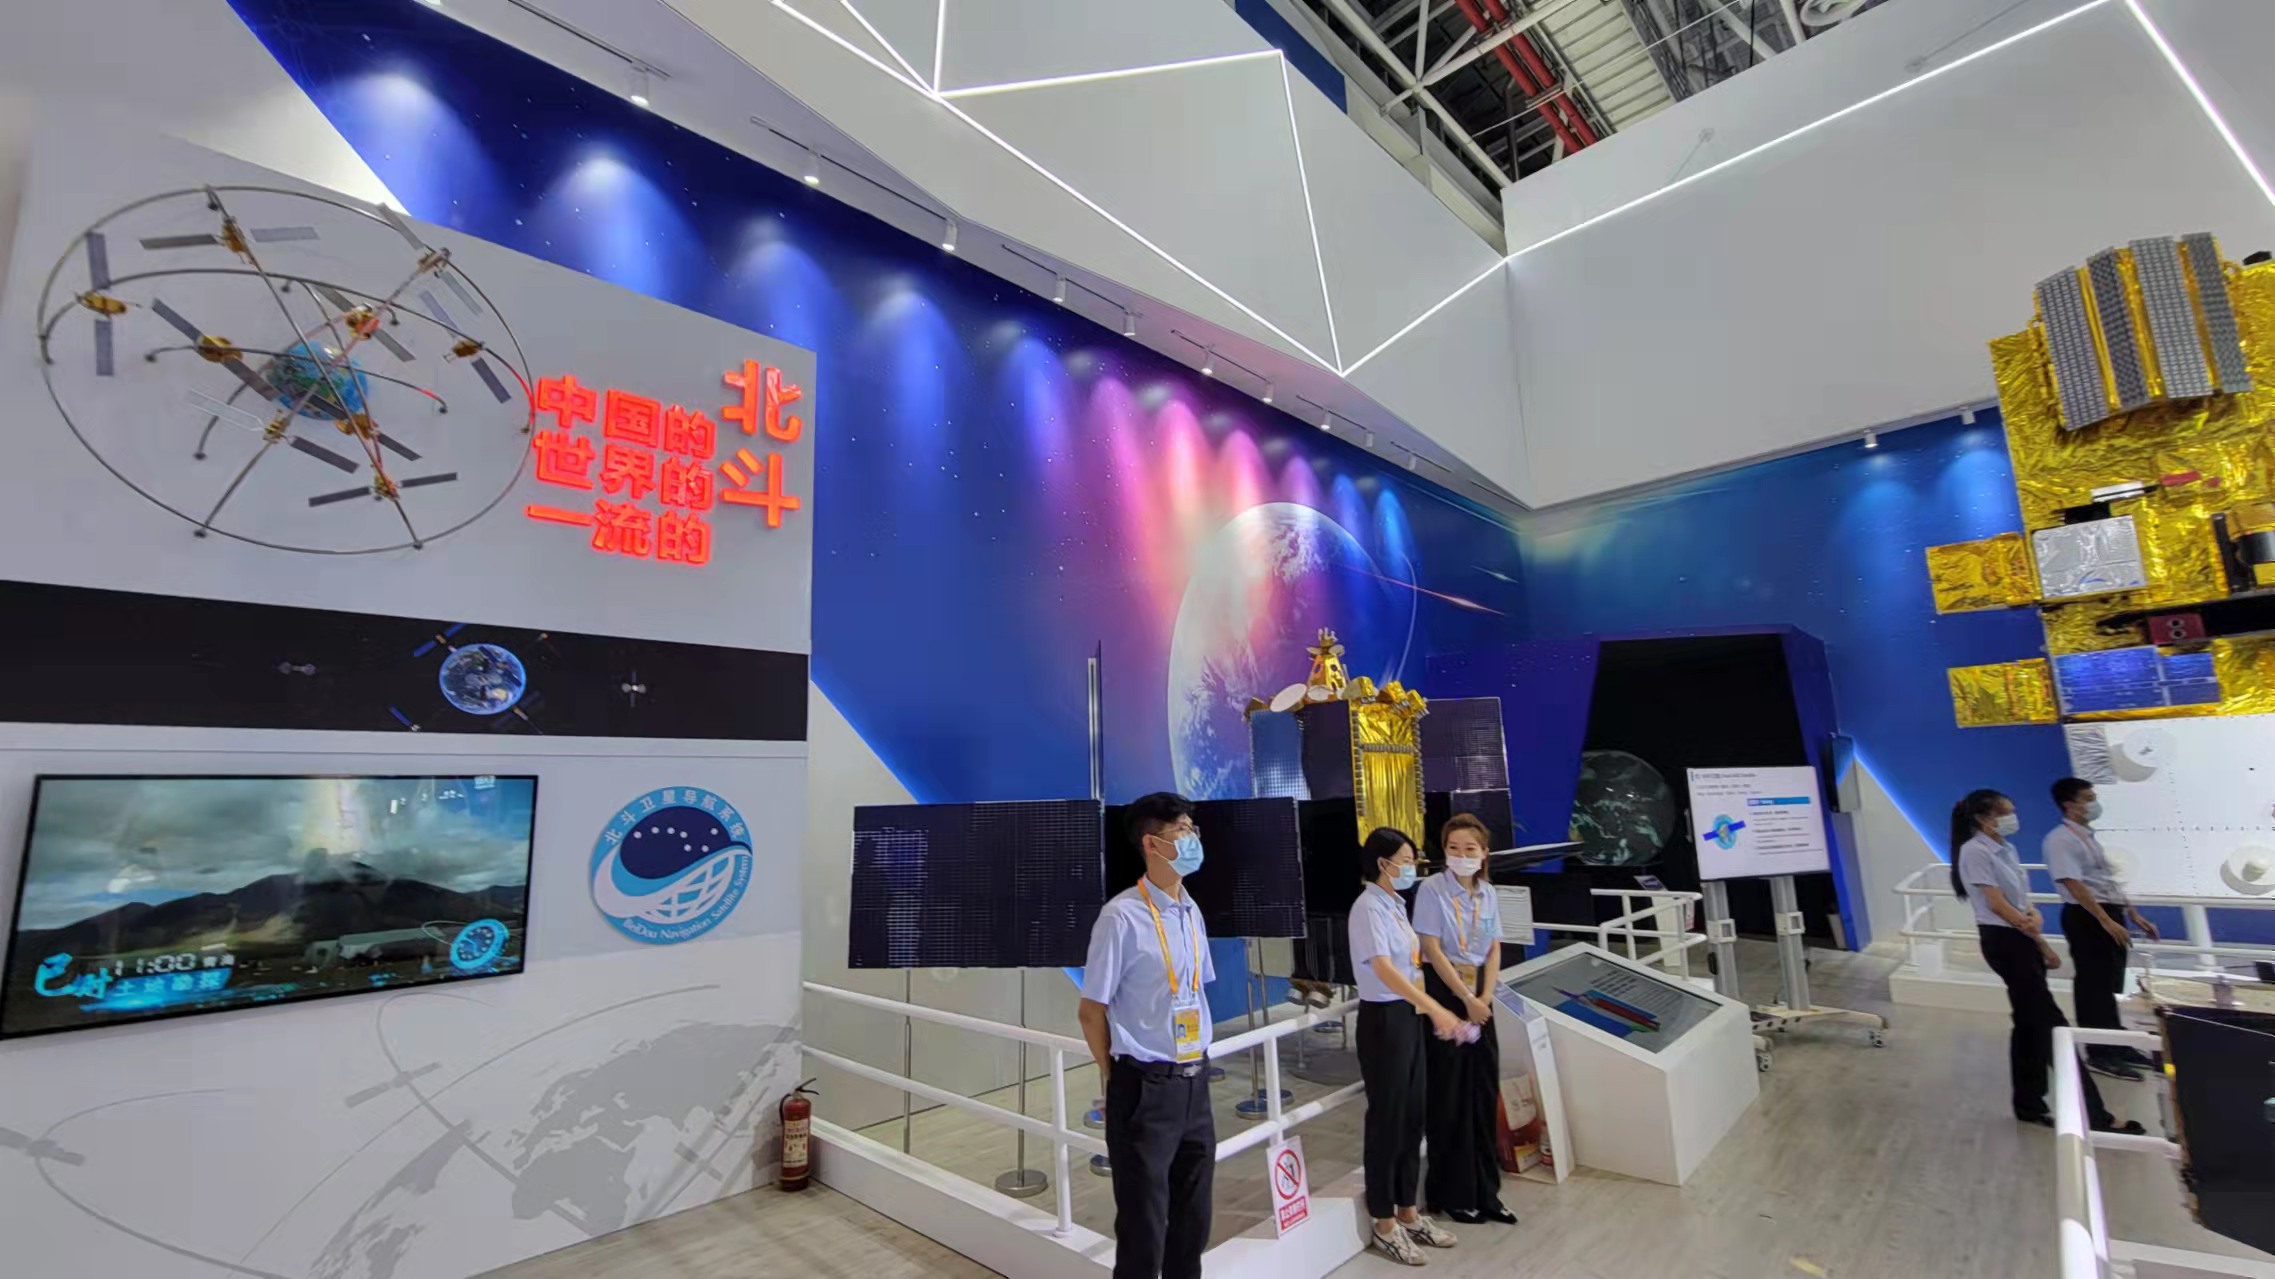 주하이 에어쇼의 중국판 GPS(위성항법 시스템) ‘베이더우’ 전시 코너. 중국에서는 2025년 ‘베이더우’ 관련 시장 규모가 175조원에 이를 것으로 전망한다. (사진 조성원 기자)